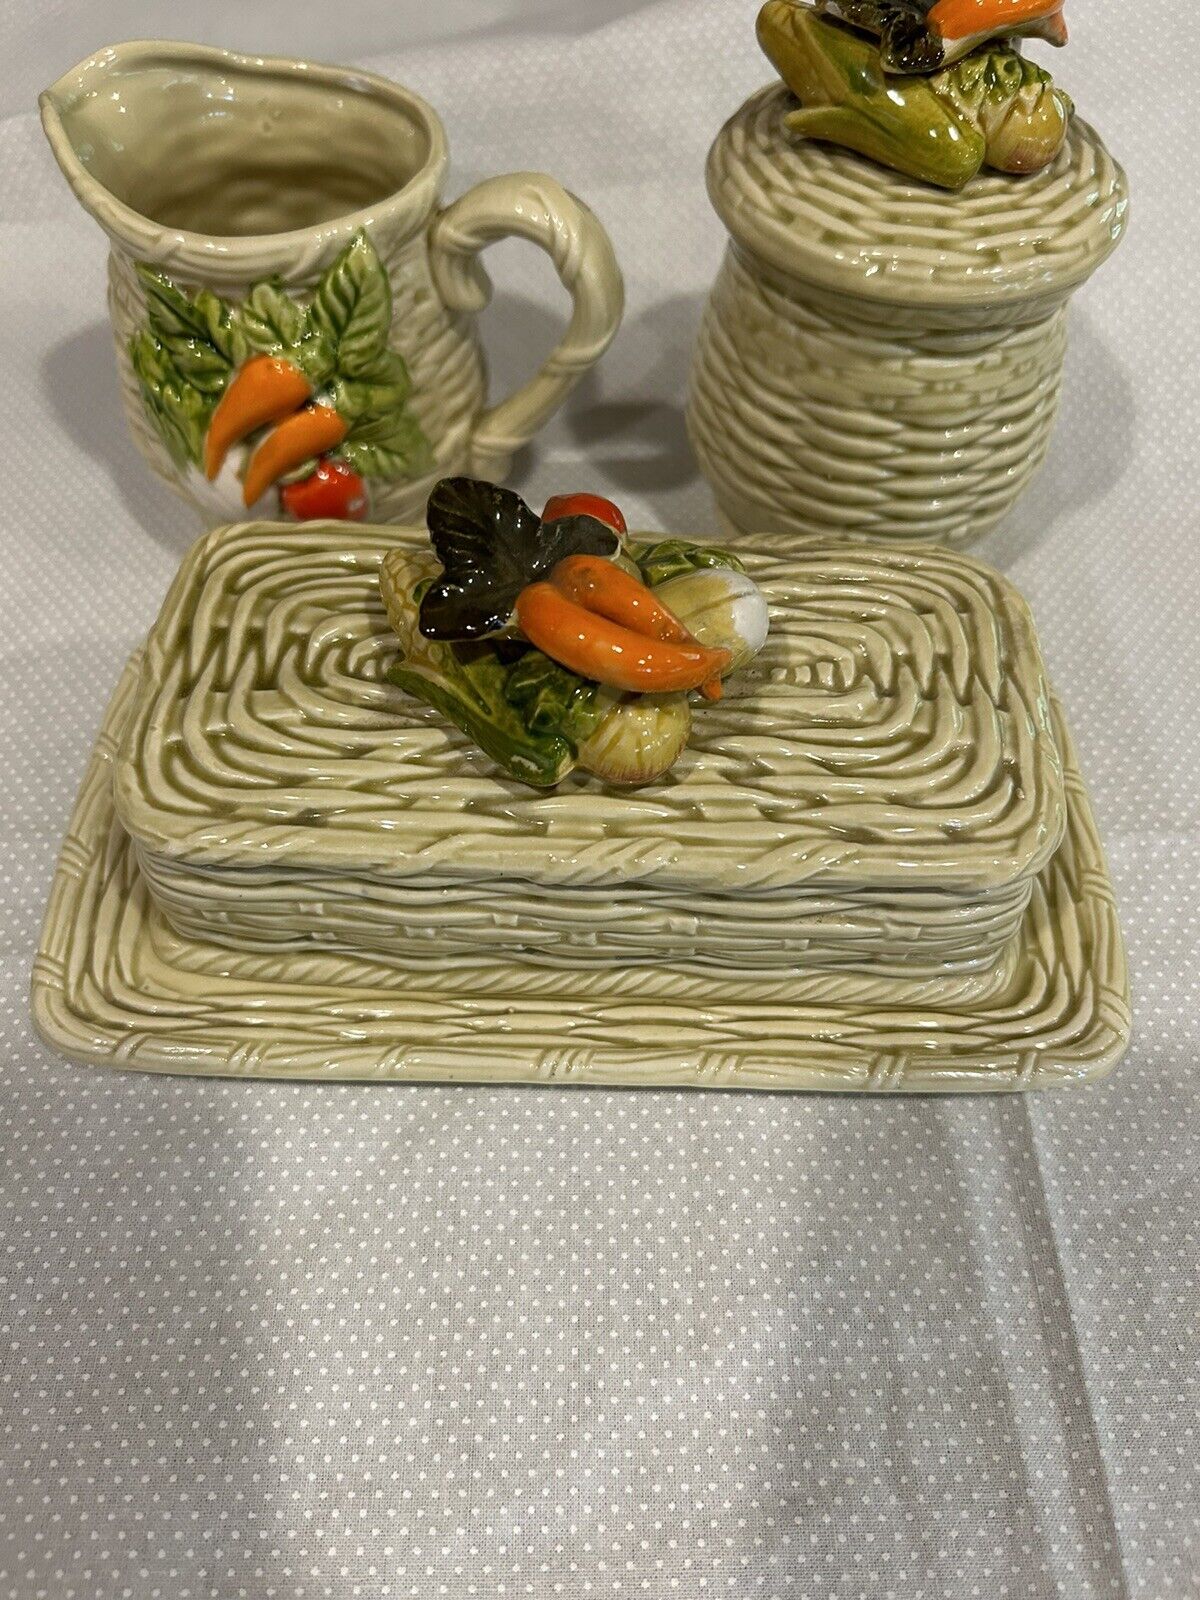 Vintage Lefton China Basket Weave Vegetable Butter Dish Creamer Sugar Set Kitsch